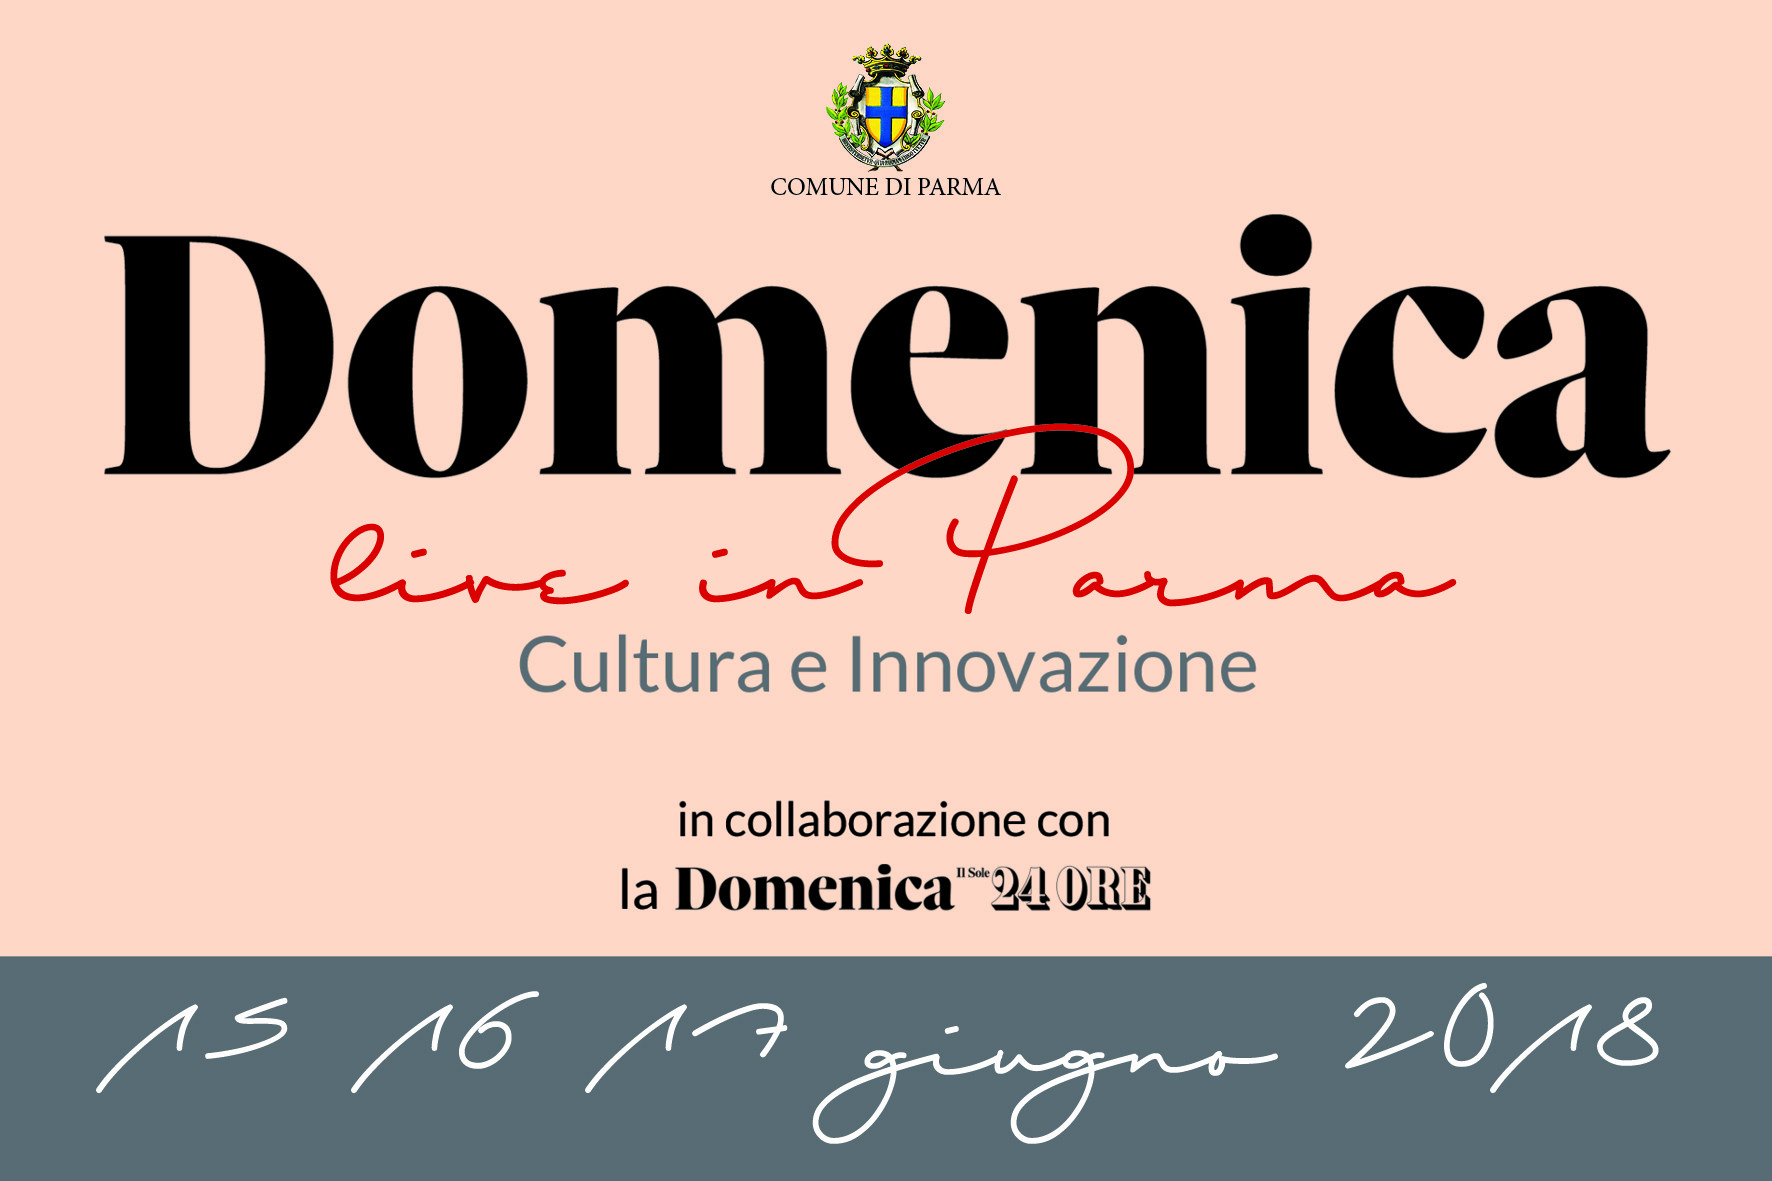 Domenica – Live in Parma  Cultura e Innovazione  Gli appuntamenti di venerdì 15 giugno